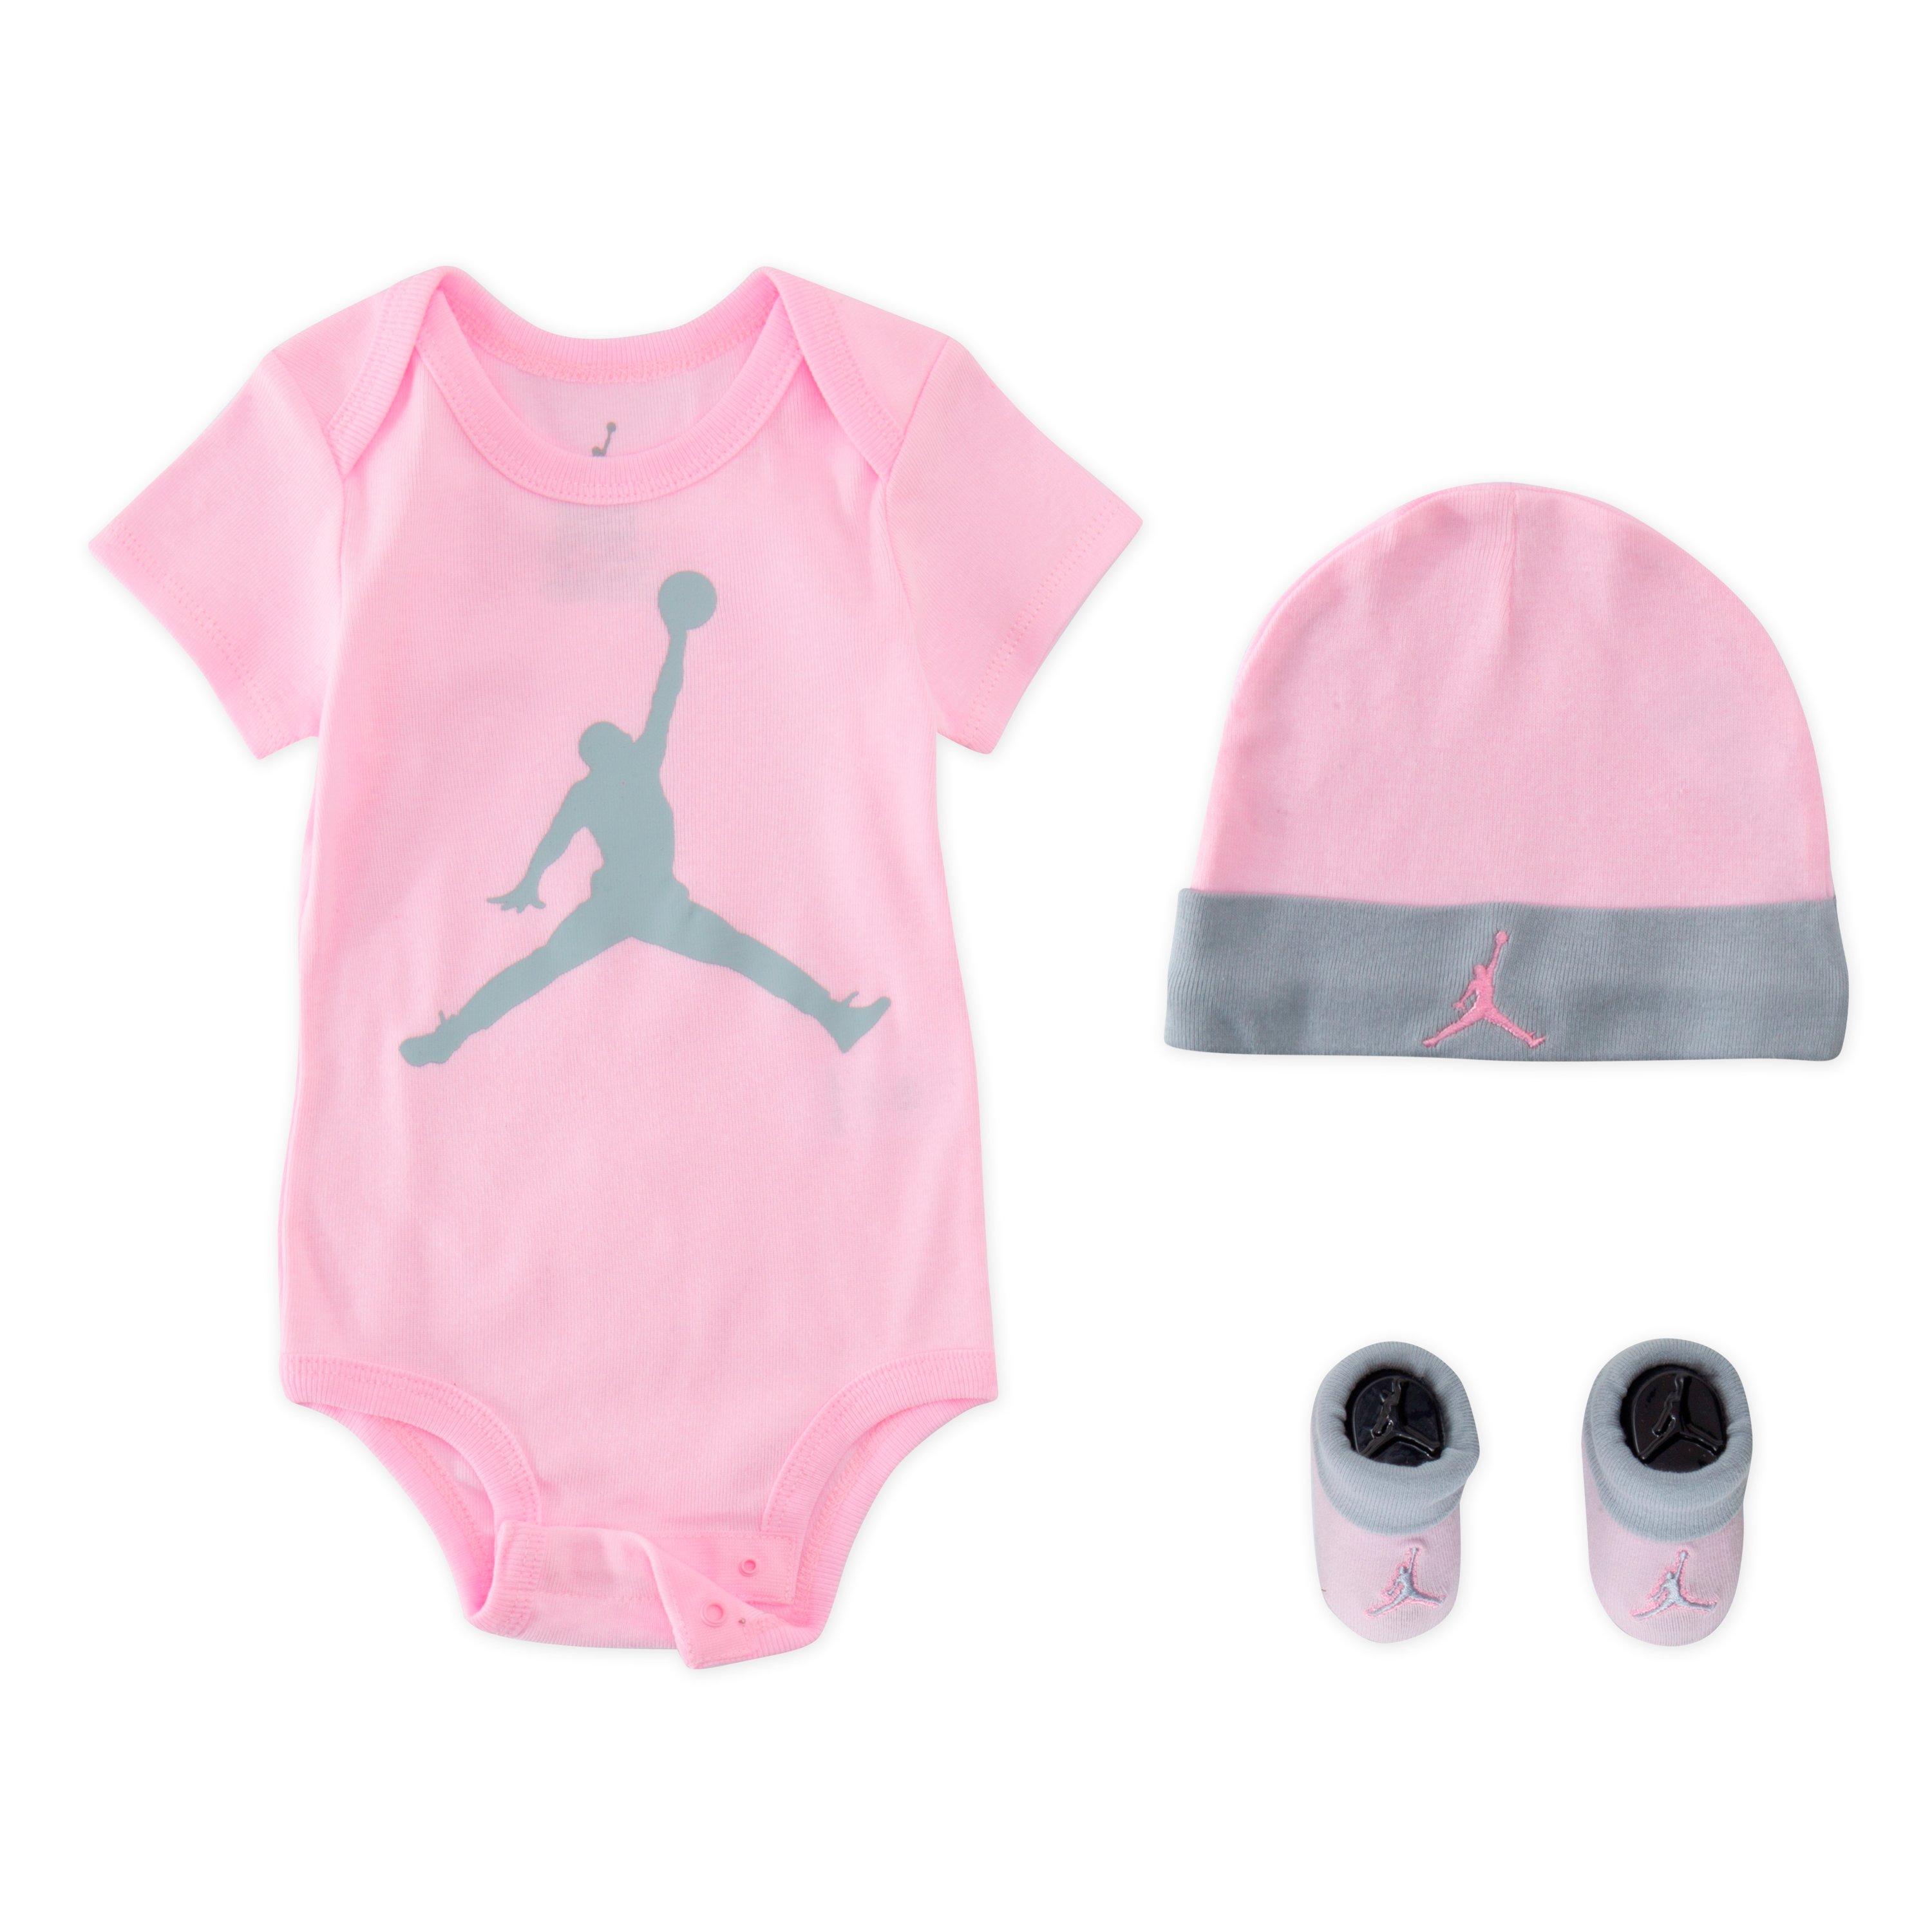 jordan infant outfit